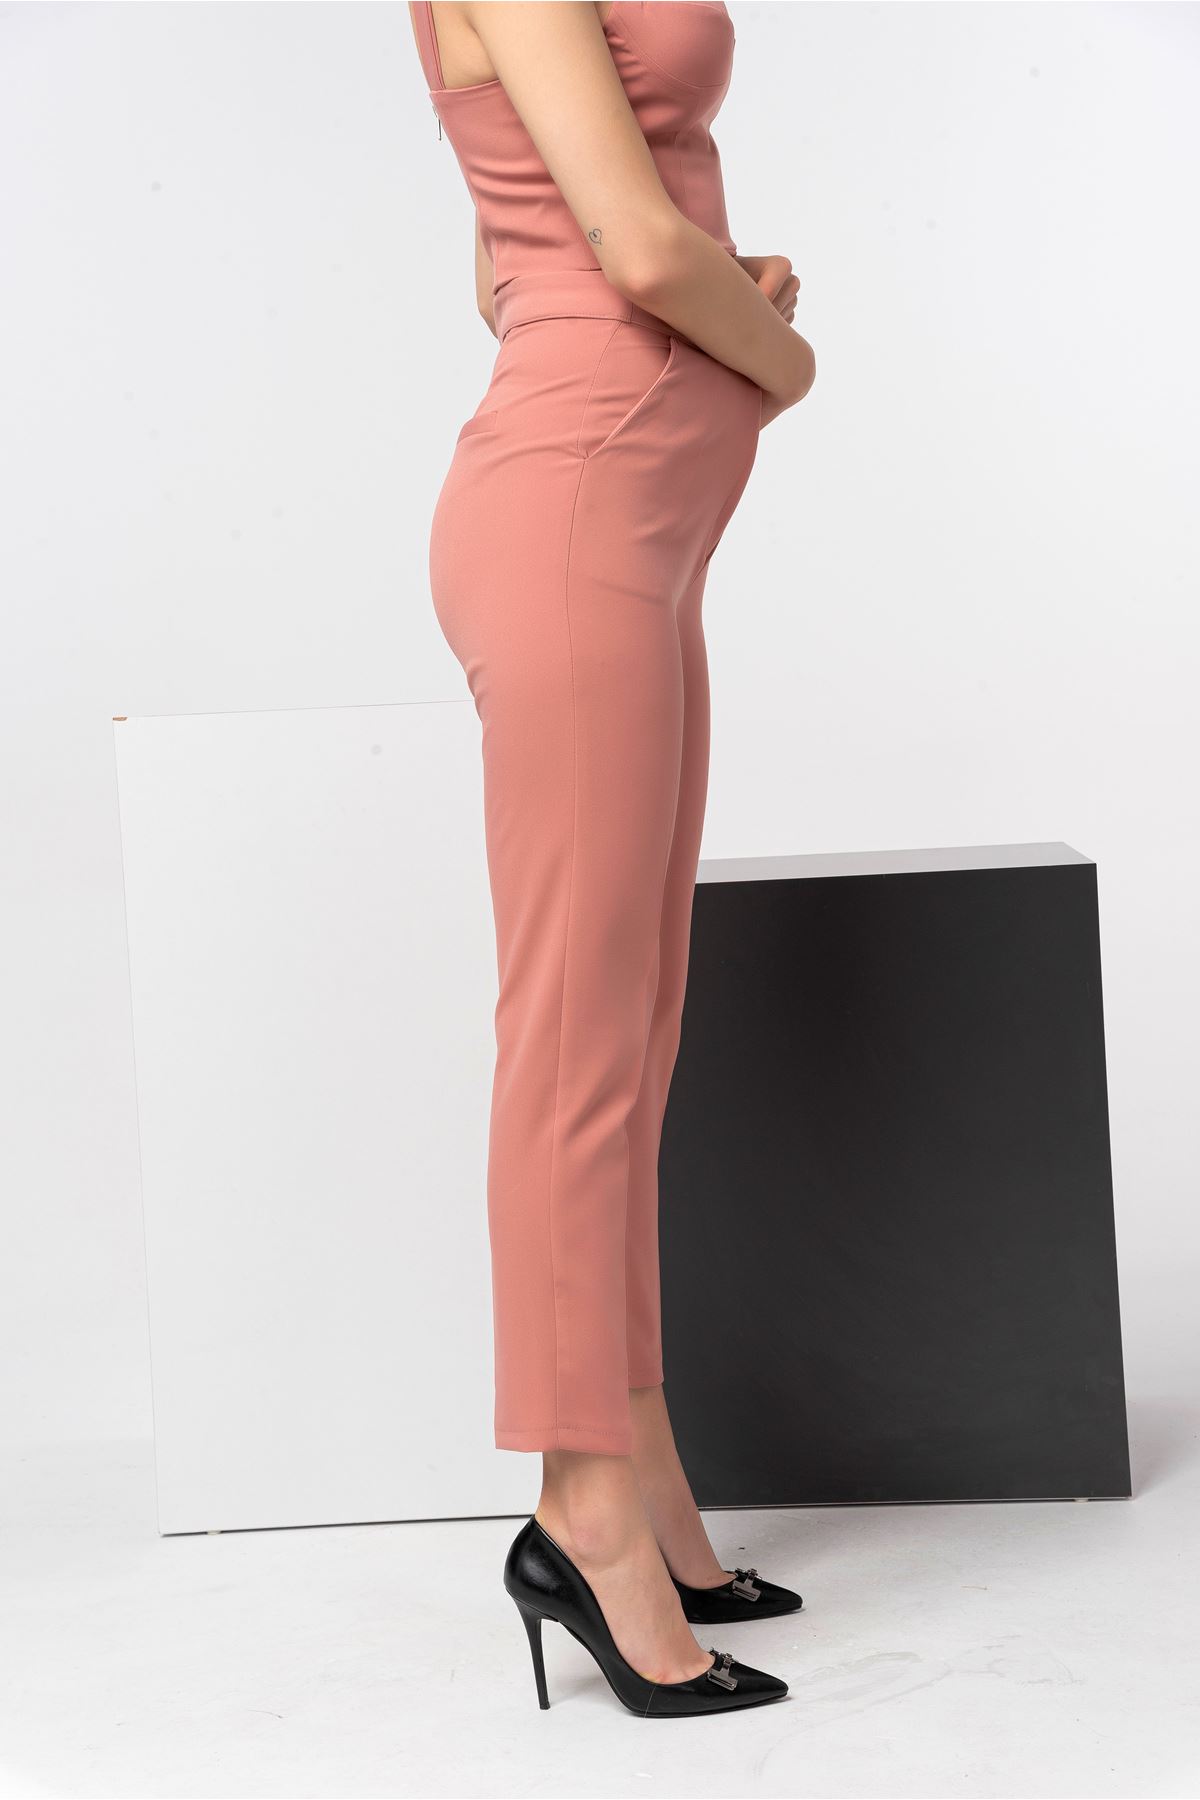 Atlas Fabric Classical Women'S Trouser - Light Pink